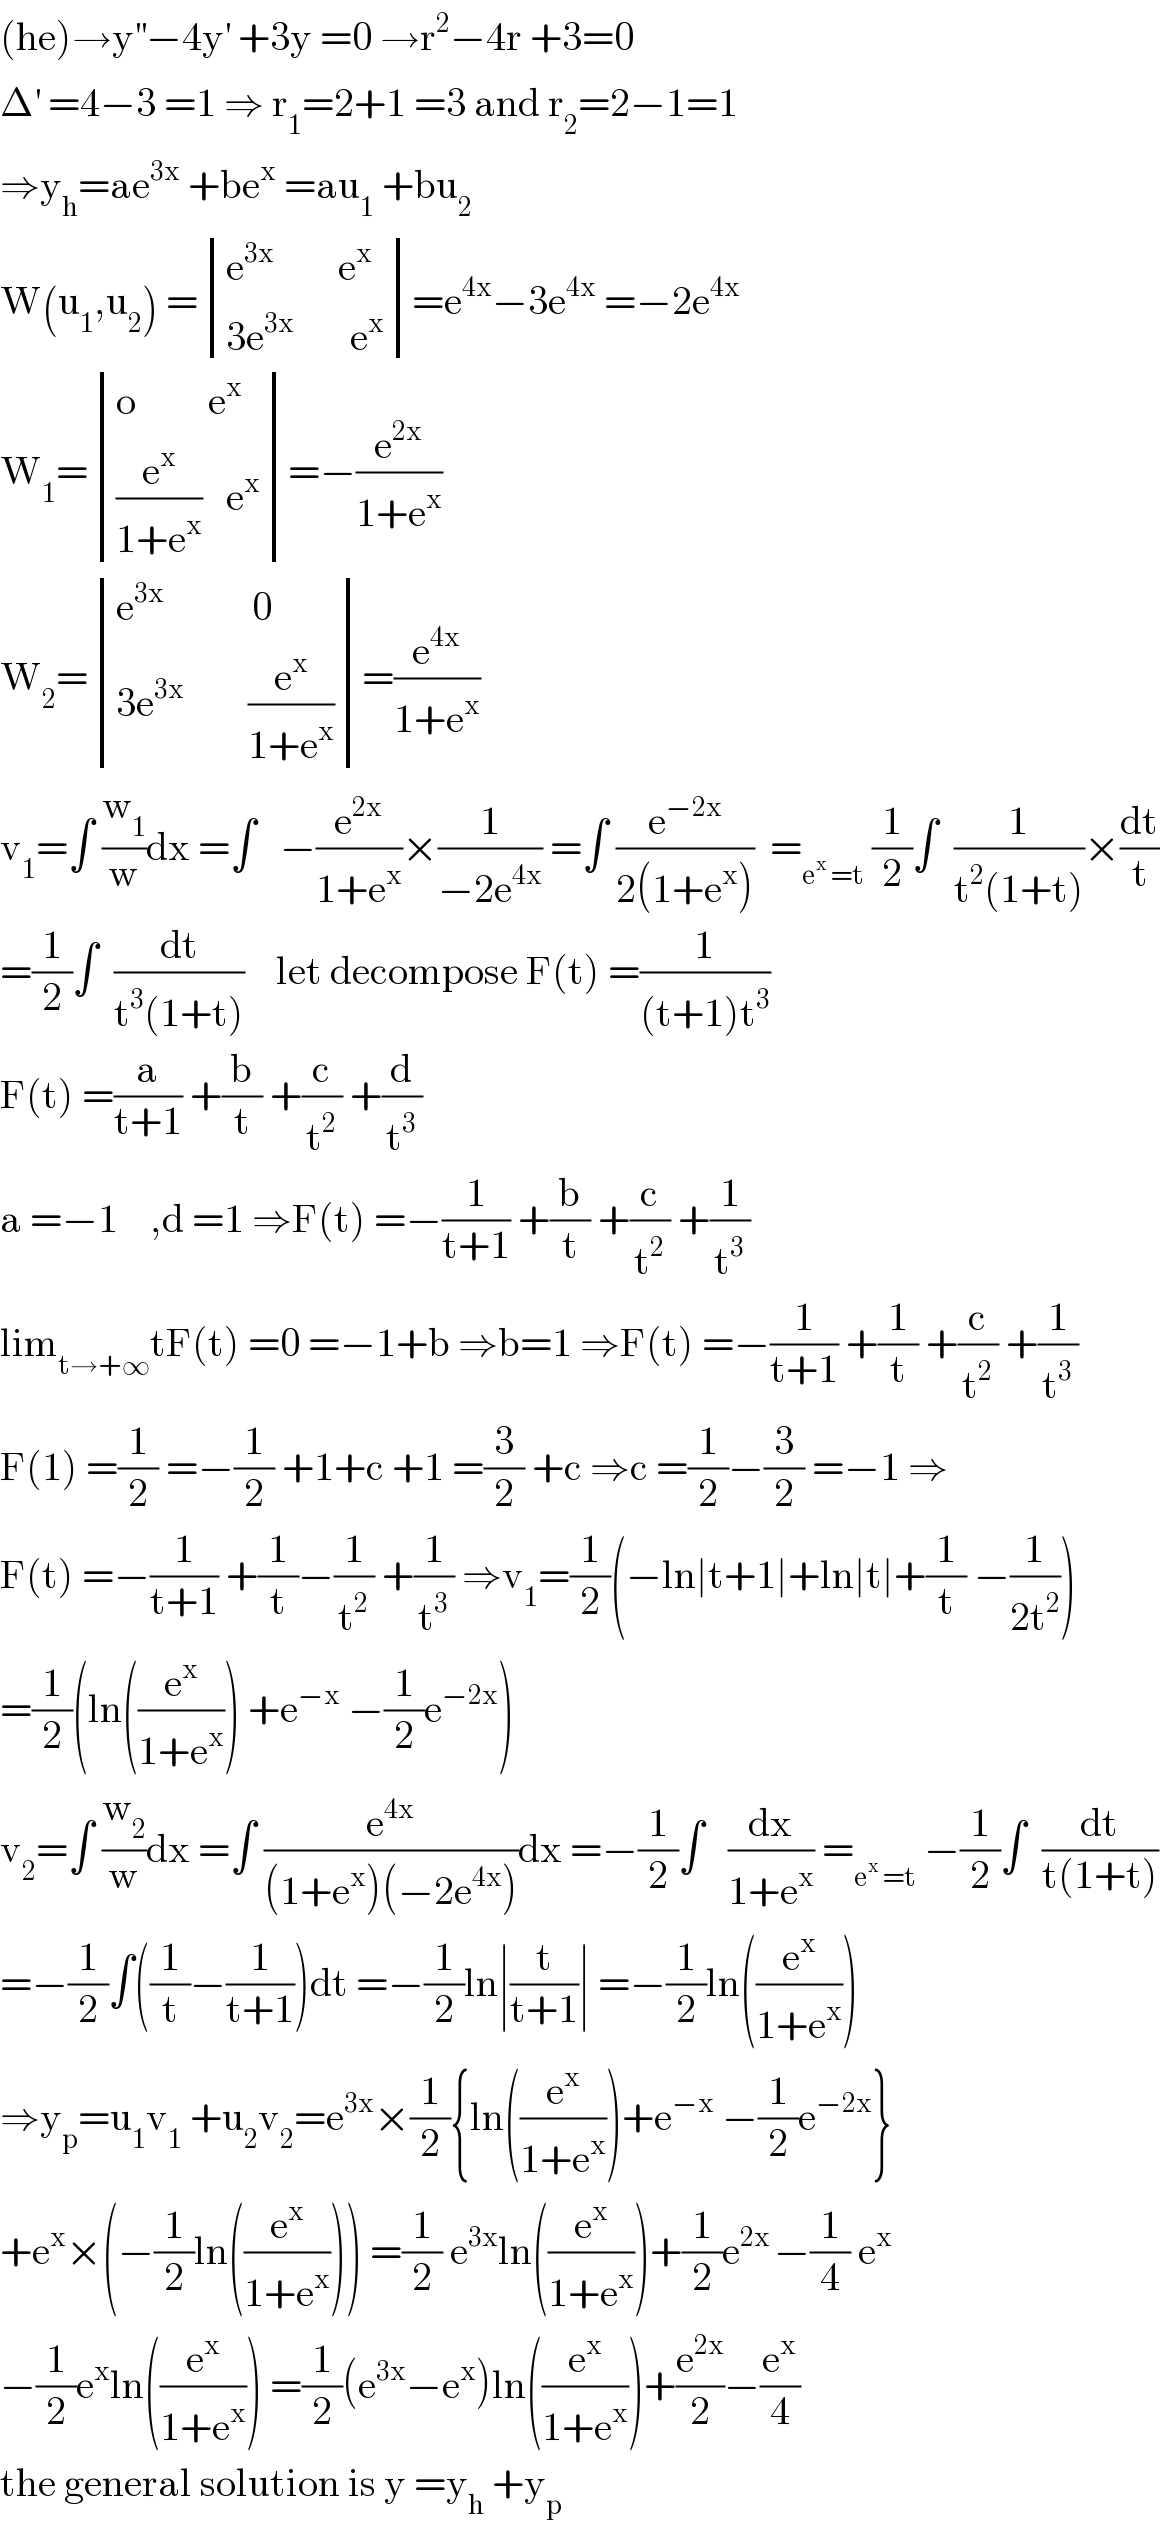 (he)→y^(′′) −4y^′  +3y =0 →r^2 −4r +3=0  Δ^′  =4−3 =1 ⇒ r_1 =2+1 =3 and r_2 =2−1=1  ⇒y_h =ae^(3x)  +be^x  =au_1  +bu_2   W(u_1 ,u_2 ) = determinant (((e^(3x      )      e^x )),((3e^(3x)        e^x )))=e^(4x) −3e^(4x)  =−2e^(4x)   W_1 = determinant (((o         e^x )),(((e^x /(1+e^x ))   e^x )))=−(e^(2x) /(1+e^x ))  W_2 = determinant (((e^(3x)            0)),((3e^(3x)         (e^x /(1+e^x )))))=(e^(4x) /(1+e^x ))  v_1 =∫ (w_1 /w)dx =∫   −(e^(2x) /(1+e^x ))×(1/(−2e^(4x) )) =∫ (e^(−2x) /(2(1+e^x )))  =_(e^x  =t)  (1/2)∫  (1/(t^2 (1+t)))×(dt/t)  =(1/2)∫  (dt/(t^3 (1+t)))    let decompose F(t) =(1/((t+1)t^3 ))  F(t) =(a/(t+1)) +(b/t) +(c/t^2 ) +(d/t^3 )  a =−1    ,d =1 ⇒F(t) =−(1/(t+1)) +(b/t) +(c/t^2 ) +(1/t^3 )  lim_(t→+∞) tF(t) =0 =−1+b ⇒b=1 ⇒F(t) =−(1/(t+1)) +(1/t) +(c/t^2 ) +(1/t^3 )  F(1) =(1/2) =−(1/2) +1+c +1 =(3/2) +c ⇒c =(1/2)−(3/2) =−1 ⇒  F(t) =−(1/(t+1)) +(1/t)−(1/t^2 ) +(1/t^3 ) ⇒v_1 =(1/2)(−ln∣t+1∣+ln∣t∣+(1/t) −(1/(2t^2 )))  =(1/2)(ln((e^x /(1+e^x ))) +e^(−x)  −(1/2)e^(−2x) )  v_2 =∫ (w_2 /w)dx =∫ (e^(4x) /((1+e^x )(−2e^(4x) )))dx =−(1/2)∫   (dx/(1+e^x )) =_(e^x  =t)  −(1/2)∫  (dt/(t(1+t)))  =−(1/2)∫((1/t)−(1/(t+1)))dt =−(1/2)ln∣(t/(t+1))∣ =−(1/2)ln((e^x /(1+e^x )))  ⇒y_p =u_1 v_1  +u_2 v_2 =e^(3x) ×(1/2){ln((e^x /(1+e^x )))+e^(−x)  −(1/2)e^(−2x) }  +e^x ×(−(1/2)ln((e^x /(1+e^x )))) =(1/2) e^(3x) ln((e^x /(1+e^x )))+(1/2)e^(2x ) −(1/4) e^x   −(1/2)e^x ln((e^x /(1+e^x ))) =(1/2)(e^(3x) −e^x )ln((e^x /(1+e^x )))+(e^(2x) /2)−(e^x /4)  the general solution is y =y_h  +y_p   